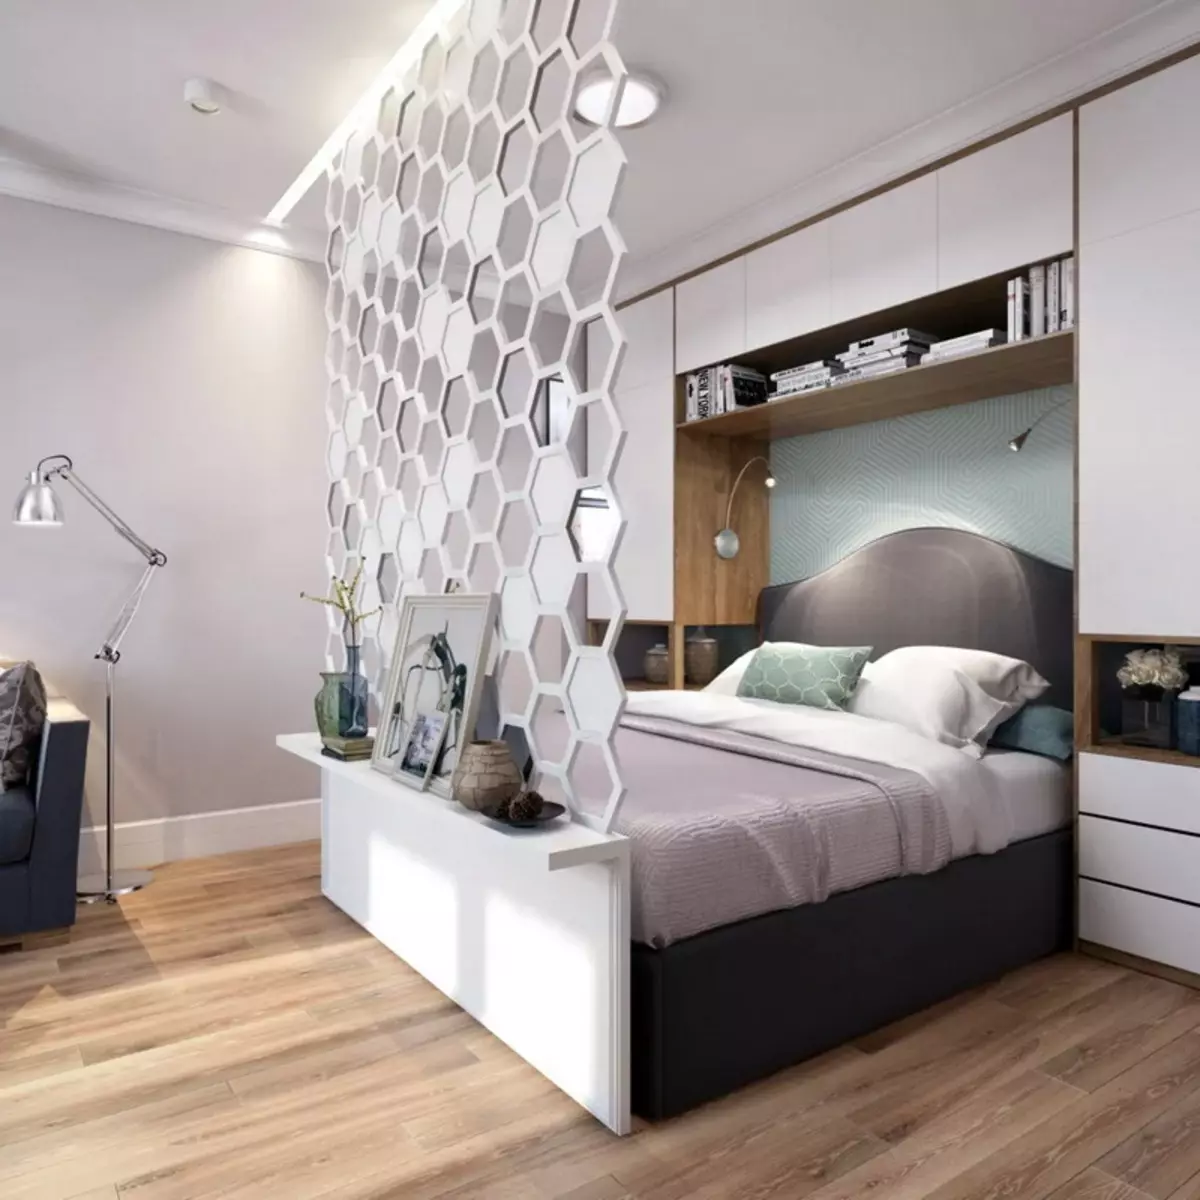 Miegamojo svetainė (112 nuotraukos): Interjero dizaino parinktys tos pačios patalpos interjero. Modulinių baldų ir tapetų, išdėstymo ir projektų pasirinkimas 9818_23